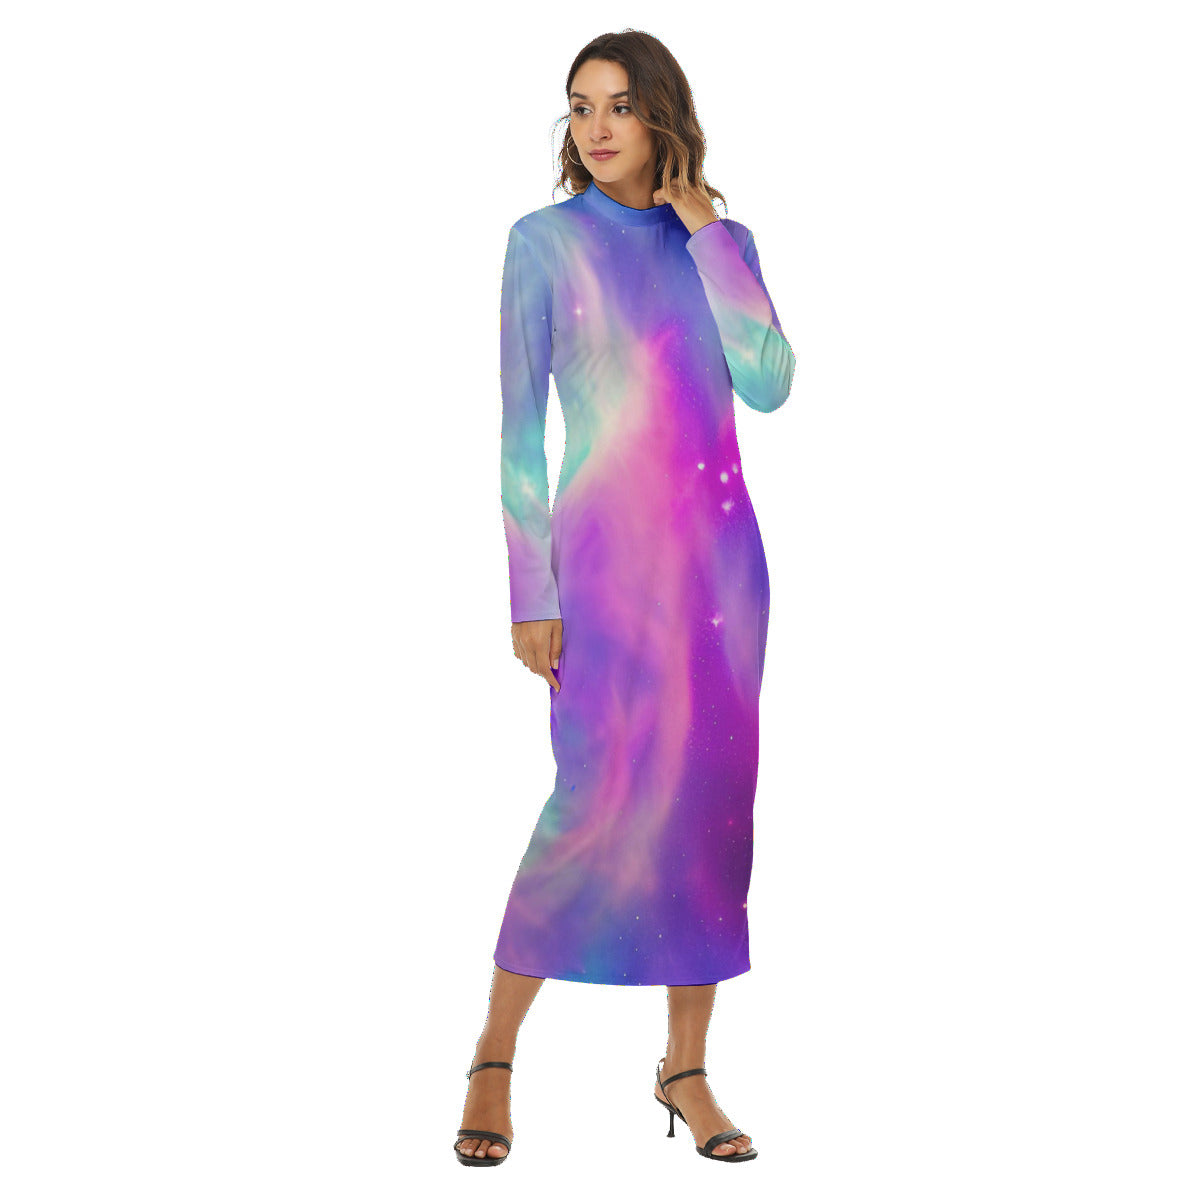 Vibrant Iridescent Cosmic Nebula Women's Fashion Hip Dress The Nebula Palace: Spiritually Cosmic Fashion